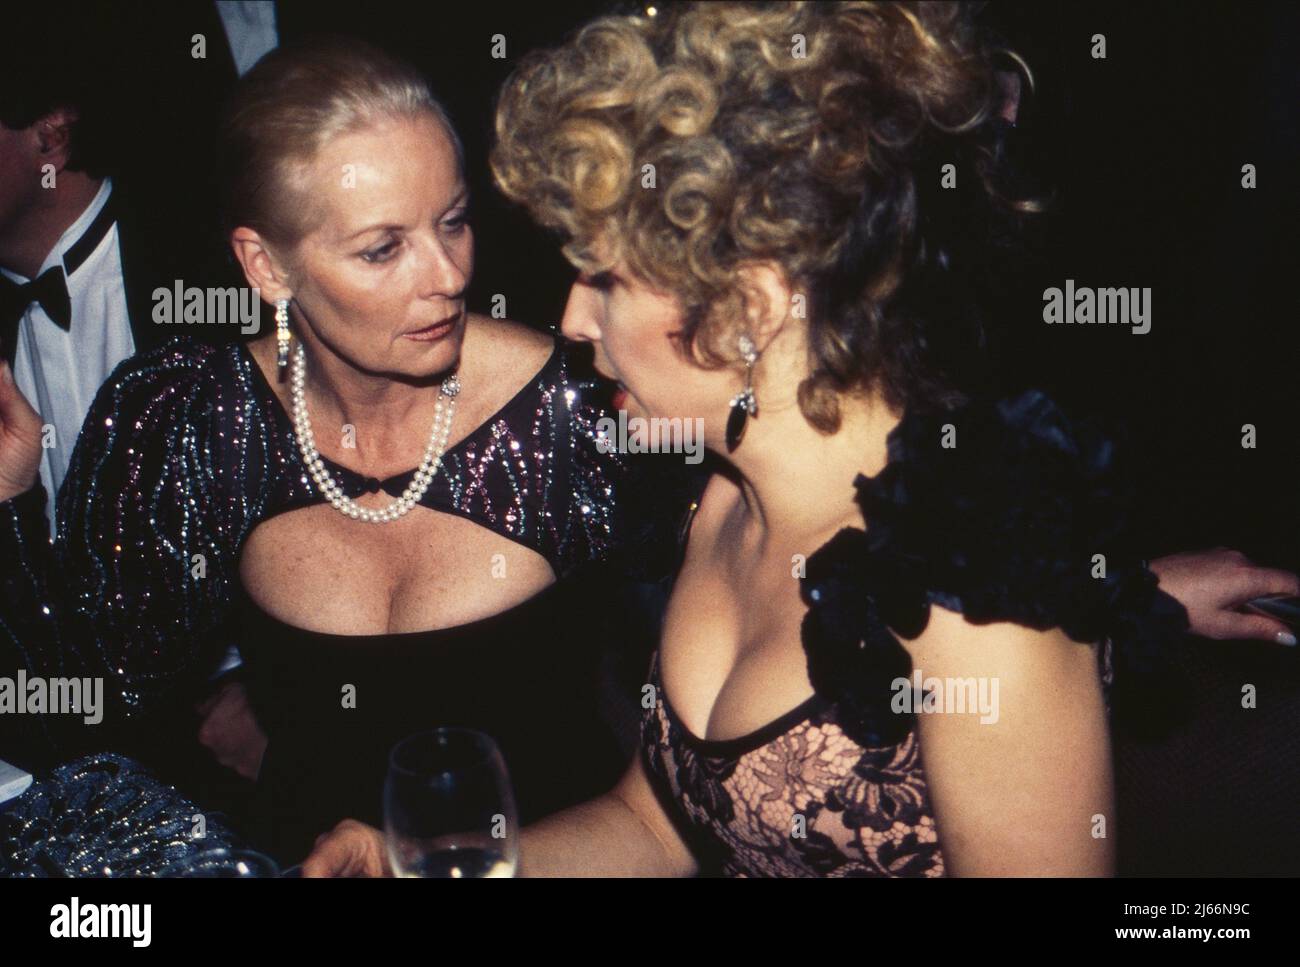 Angelika Ott Spiehs mit Michaela May bei einer Abendveranstaltung, Deutschland 1990er Jahre. Stock Photo